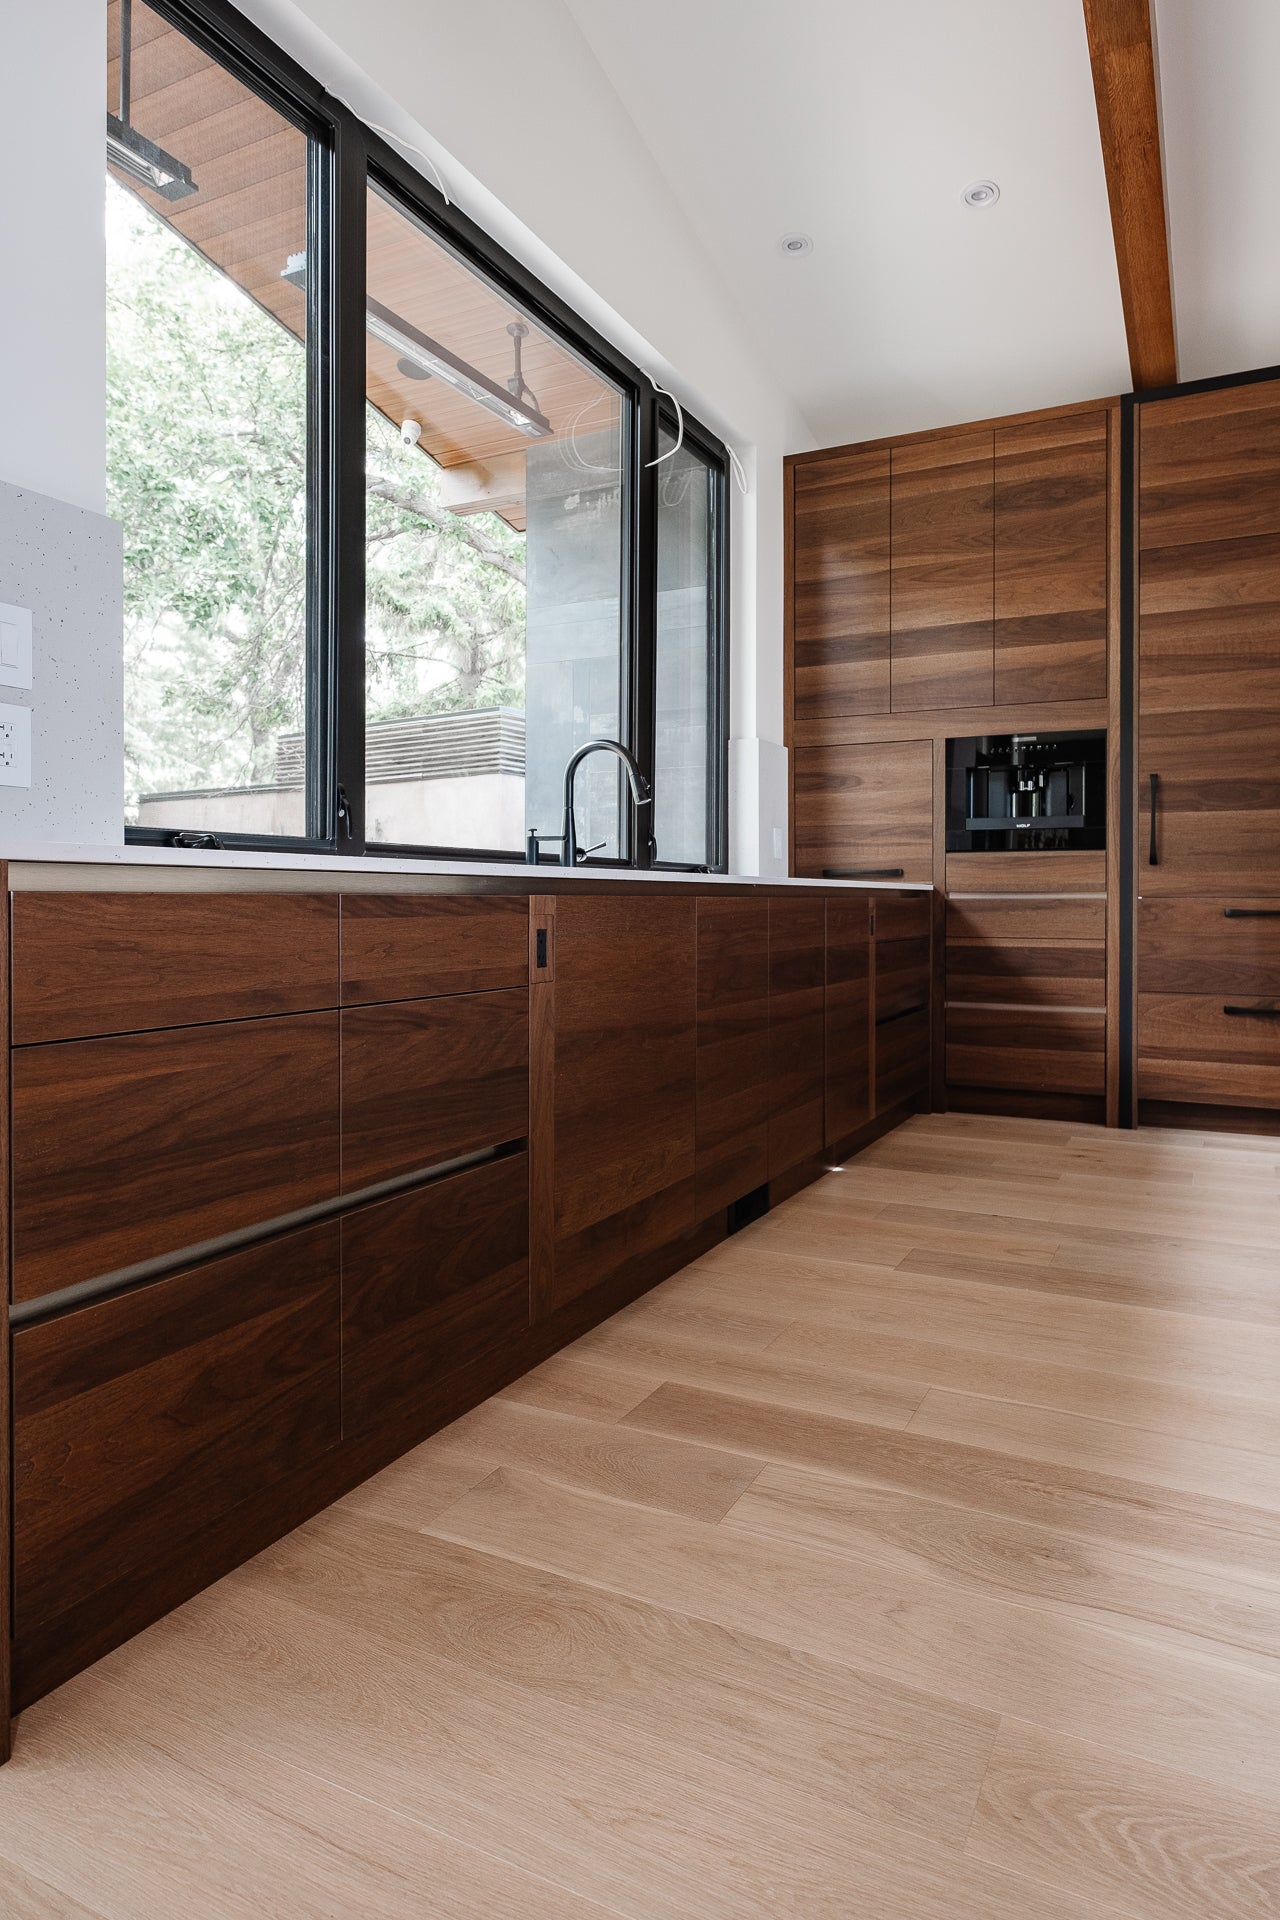 Shinnoki - Shinnoki kitchen - kitchen - wood kitchen - wooden kitchen - dark wood kitchen - modern kitchen